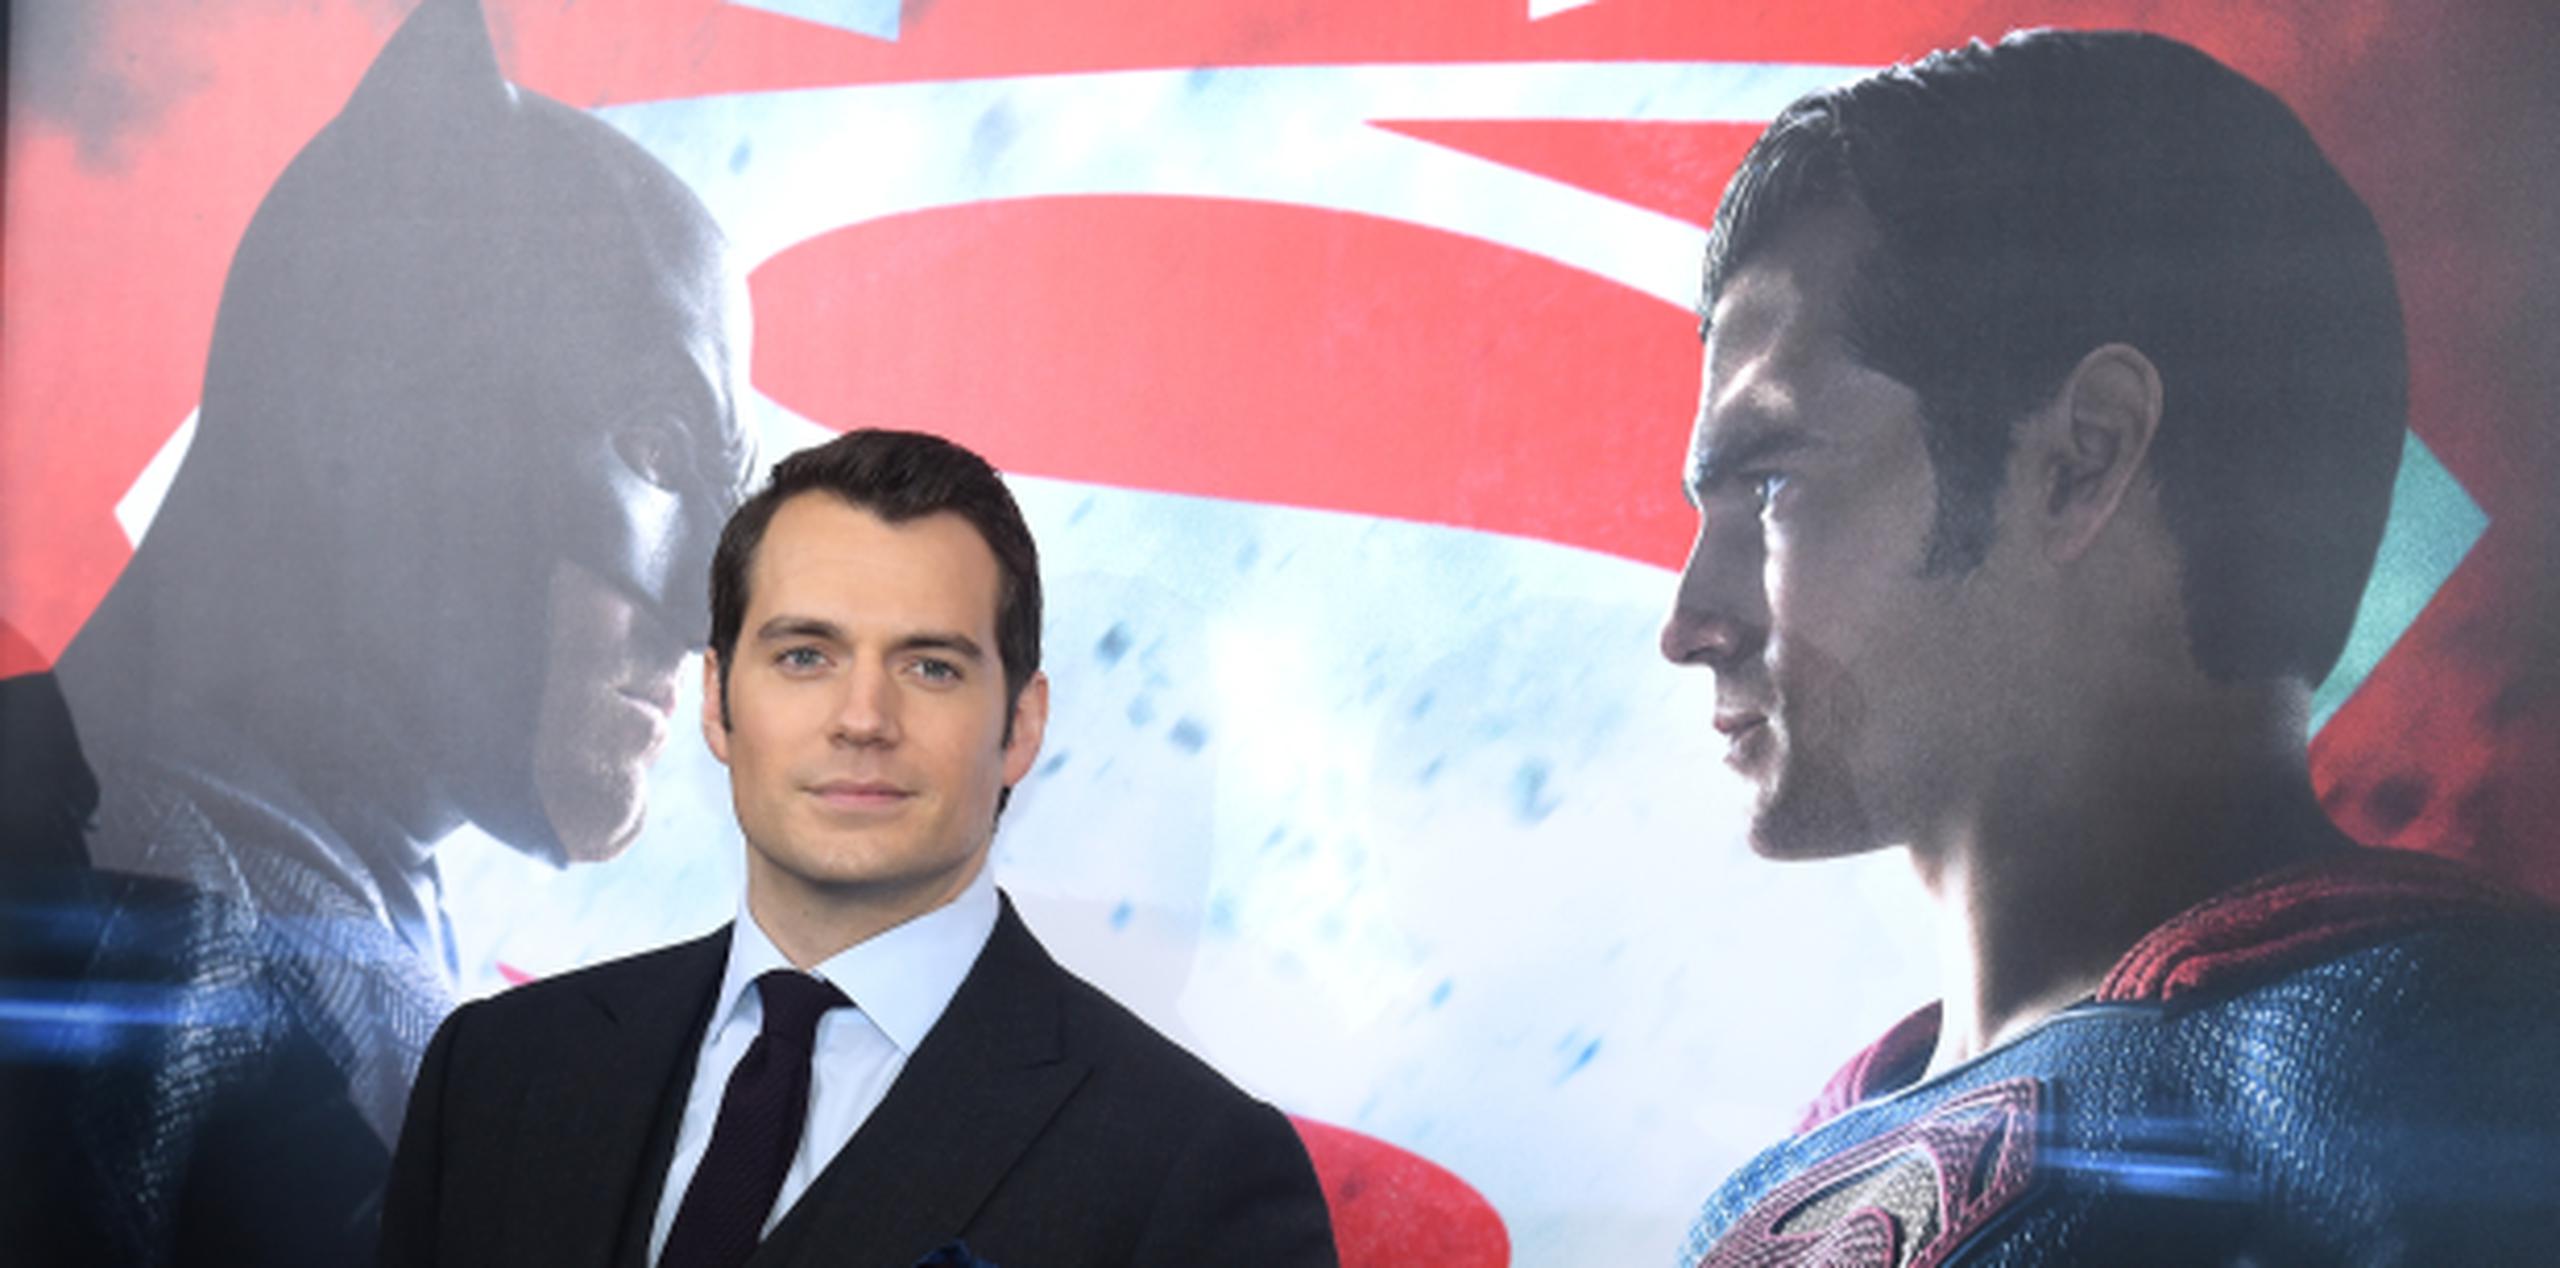 Según su agente, el actor está "empezando a expandir" el mundo de Superman para la próxima cinta del superhéroe. (Prensa Asociada)